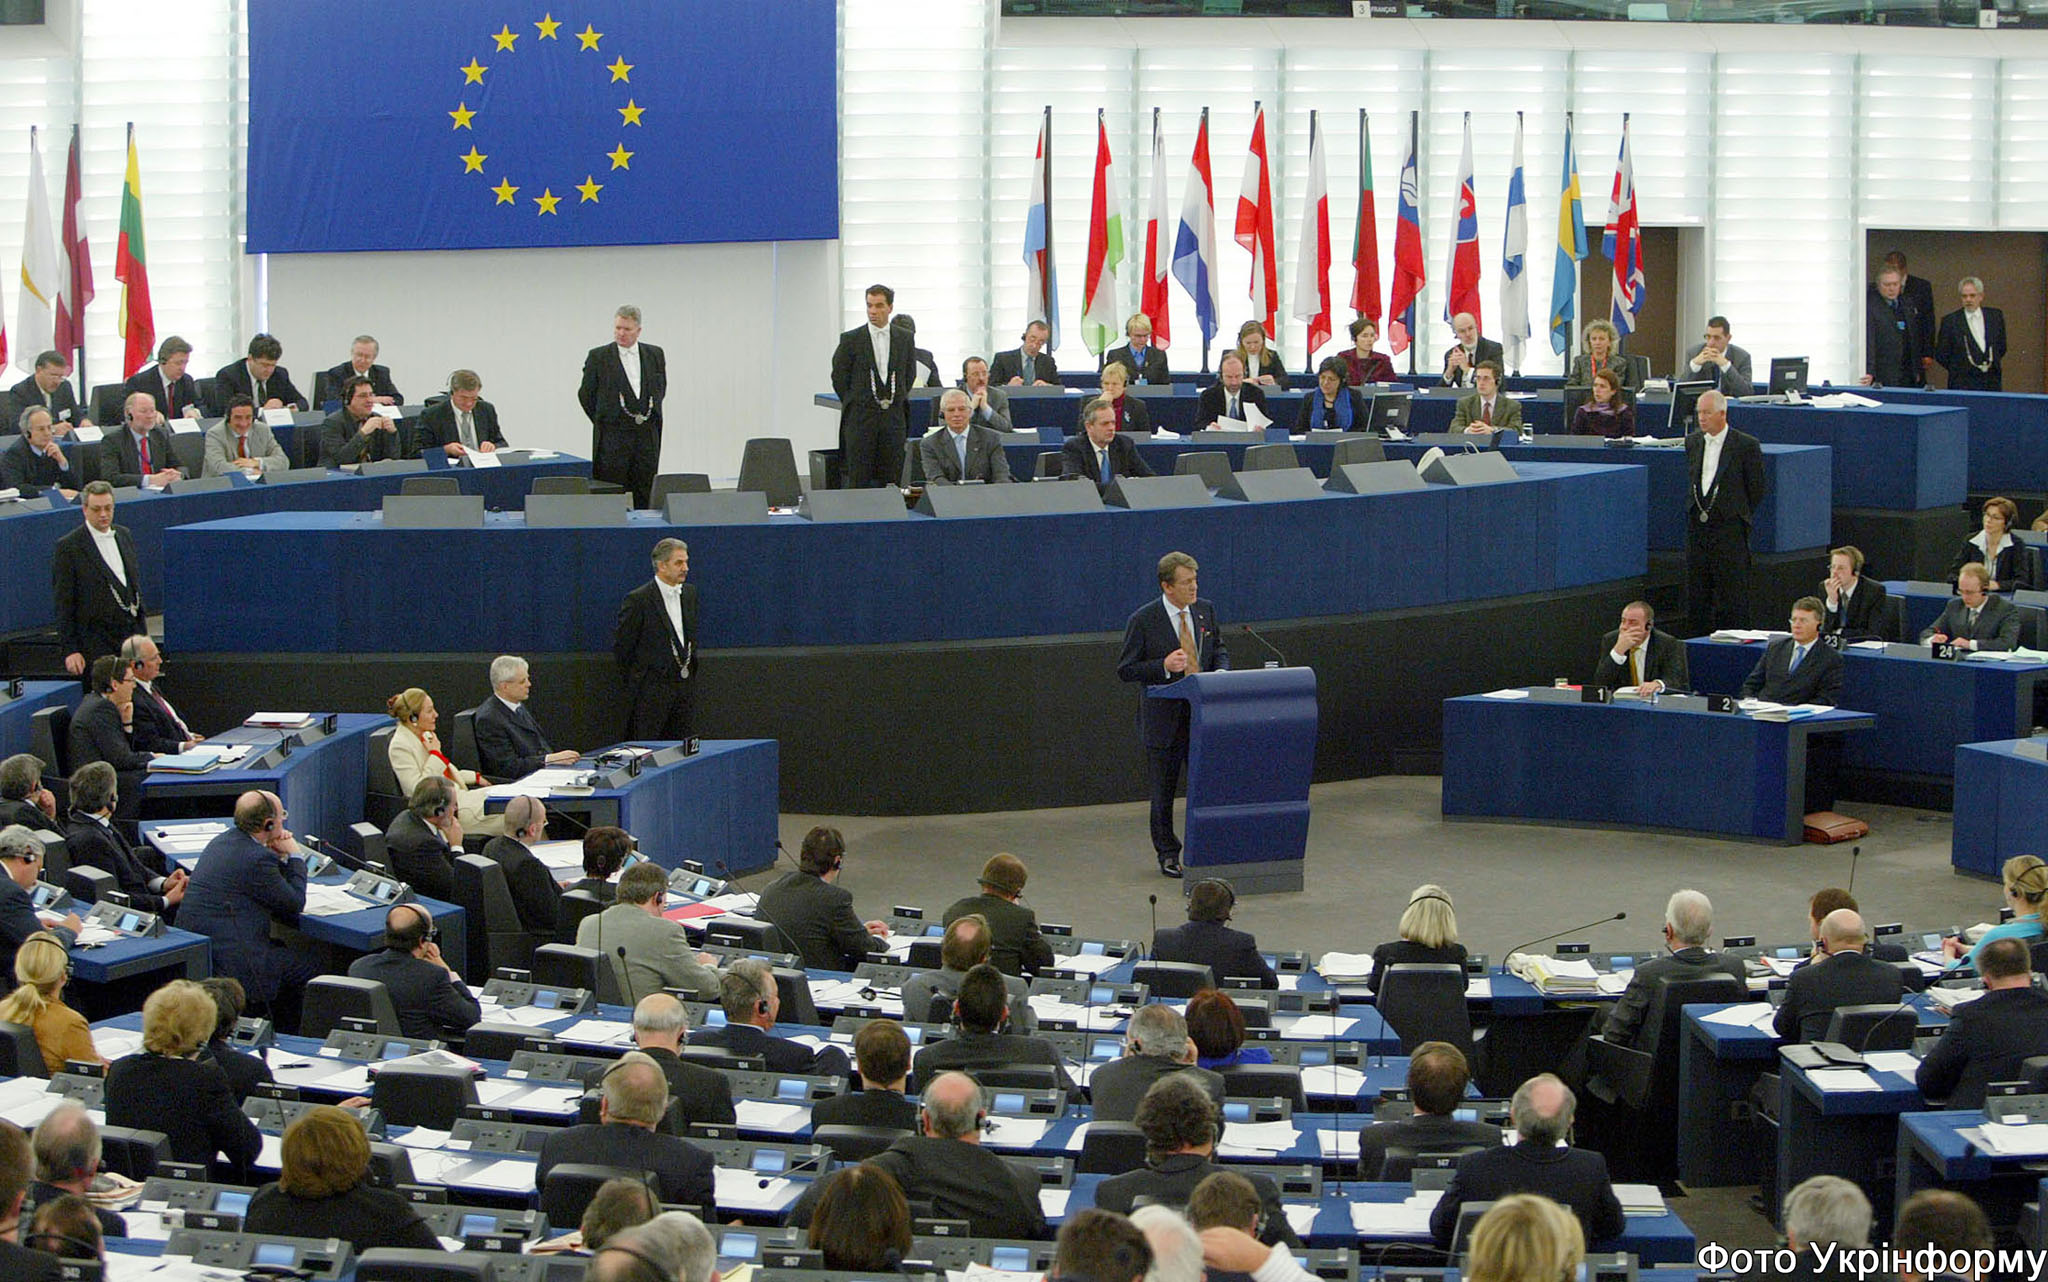 [Image: EU_Parliament.jpg]